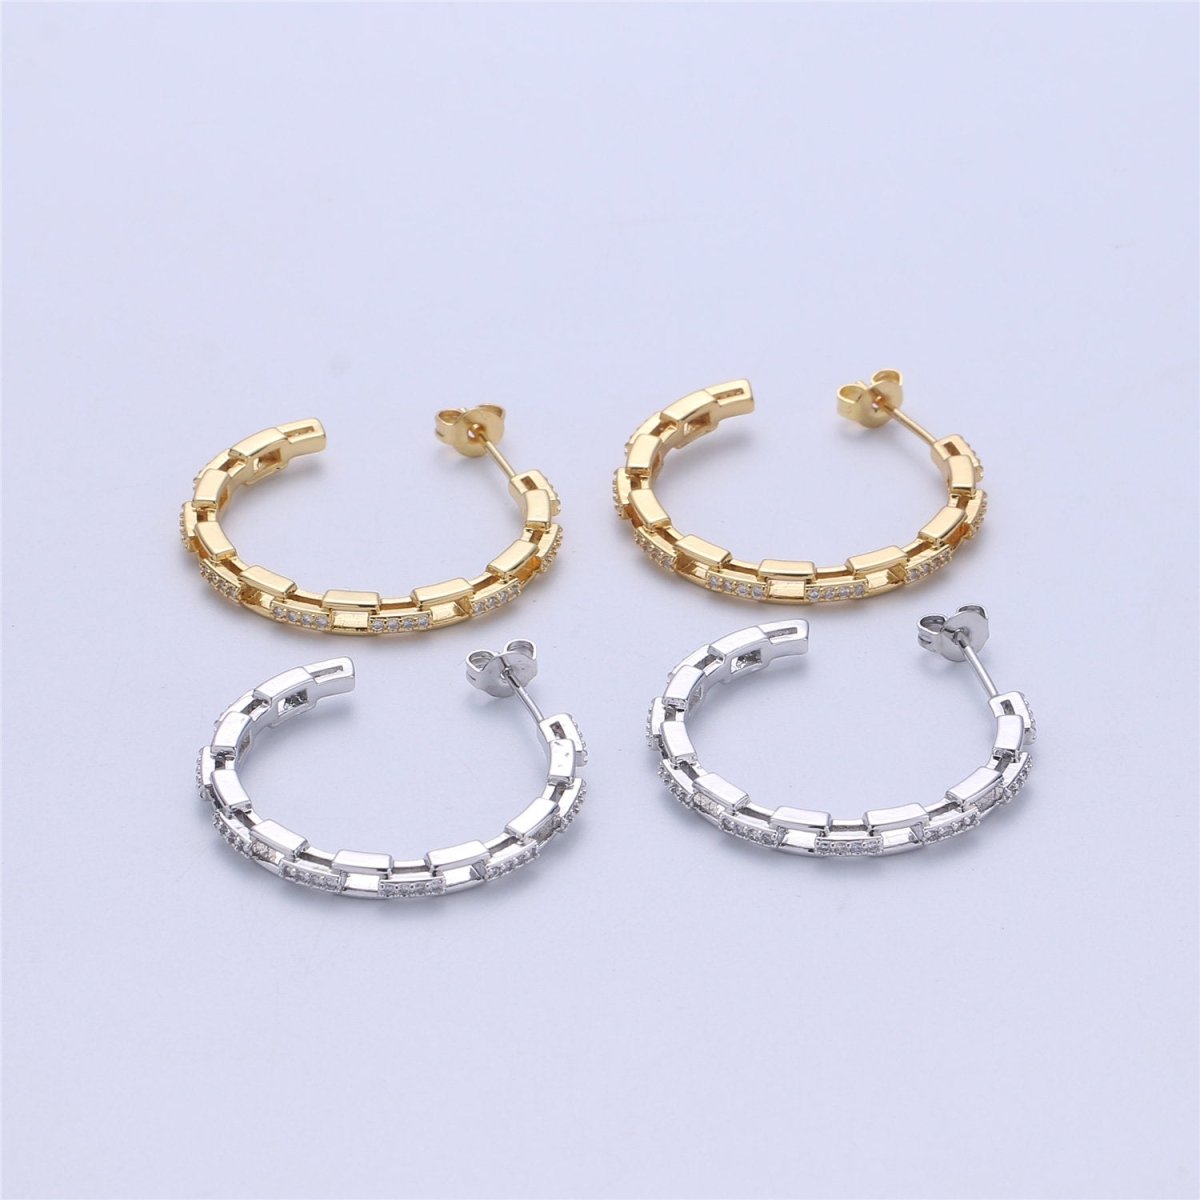 Chain Hoop Earrings - Dainty Link Hoop Earrings - Minimalist Hoops - Tiny Hoop Earrings - Linked Hoop Earring - Cartilage Hoop - Dainty Hoop Q-537 Q-538 - DLUXCA